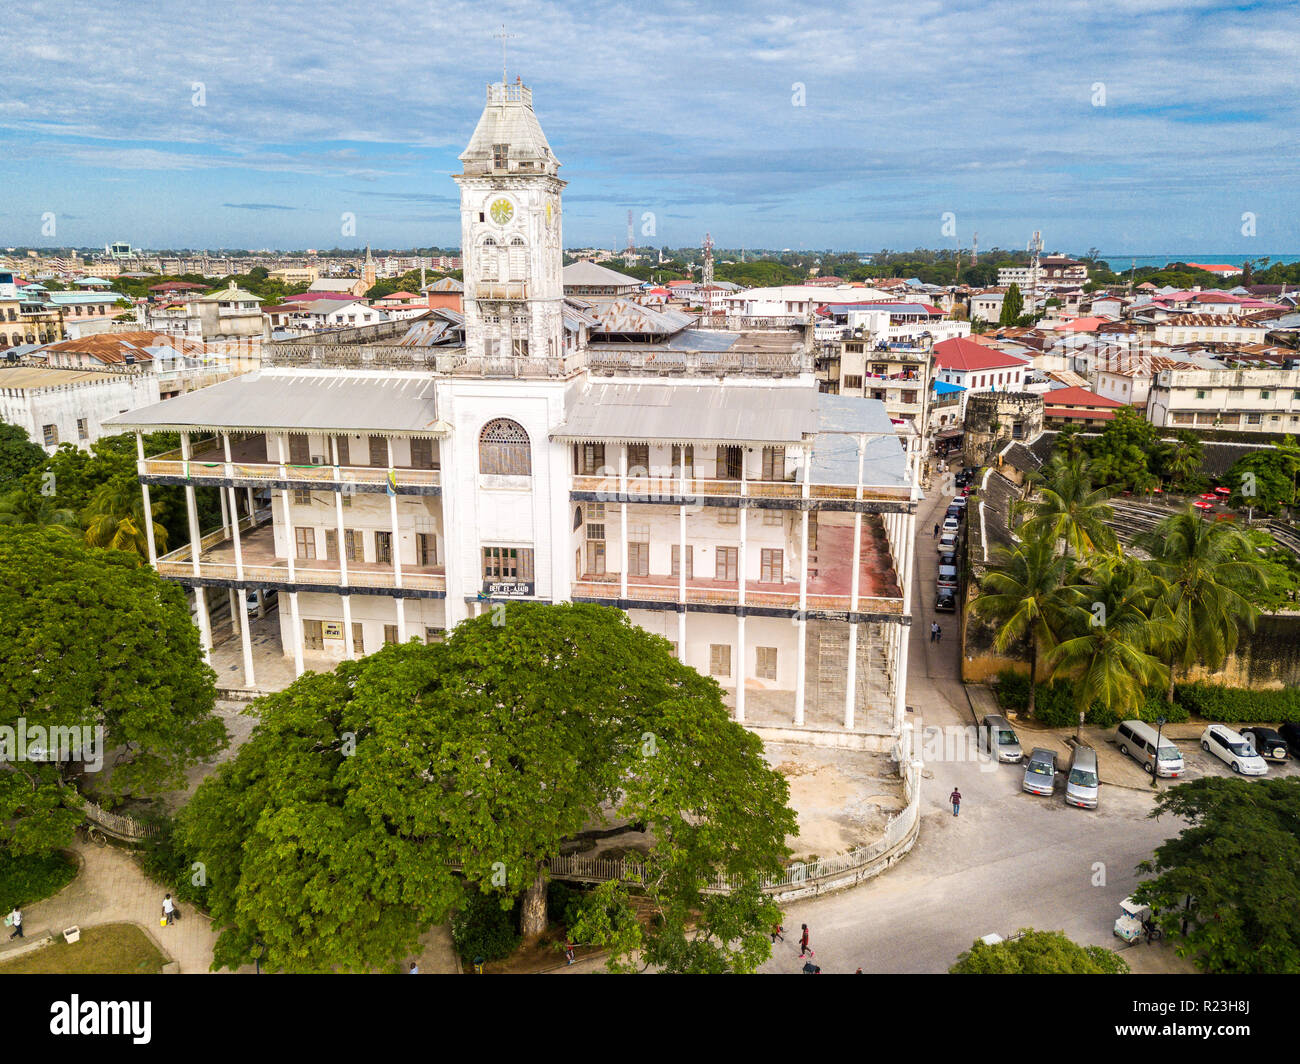 Das Haus der Wunder. Stone Town, alten kolonialen Zentrum von Zanzibar City, Unguja Insel, Tansania. Antenne drone Foto. Stockfoto